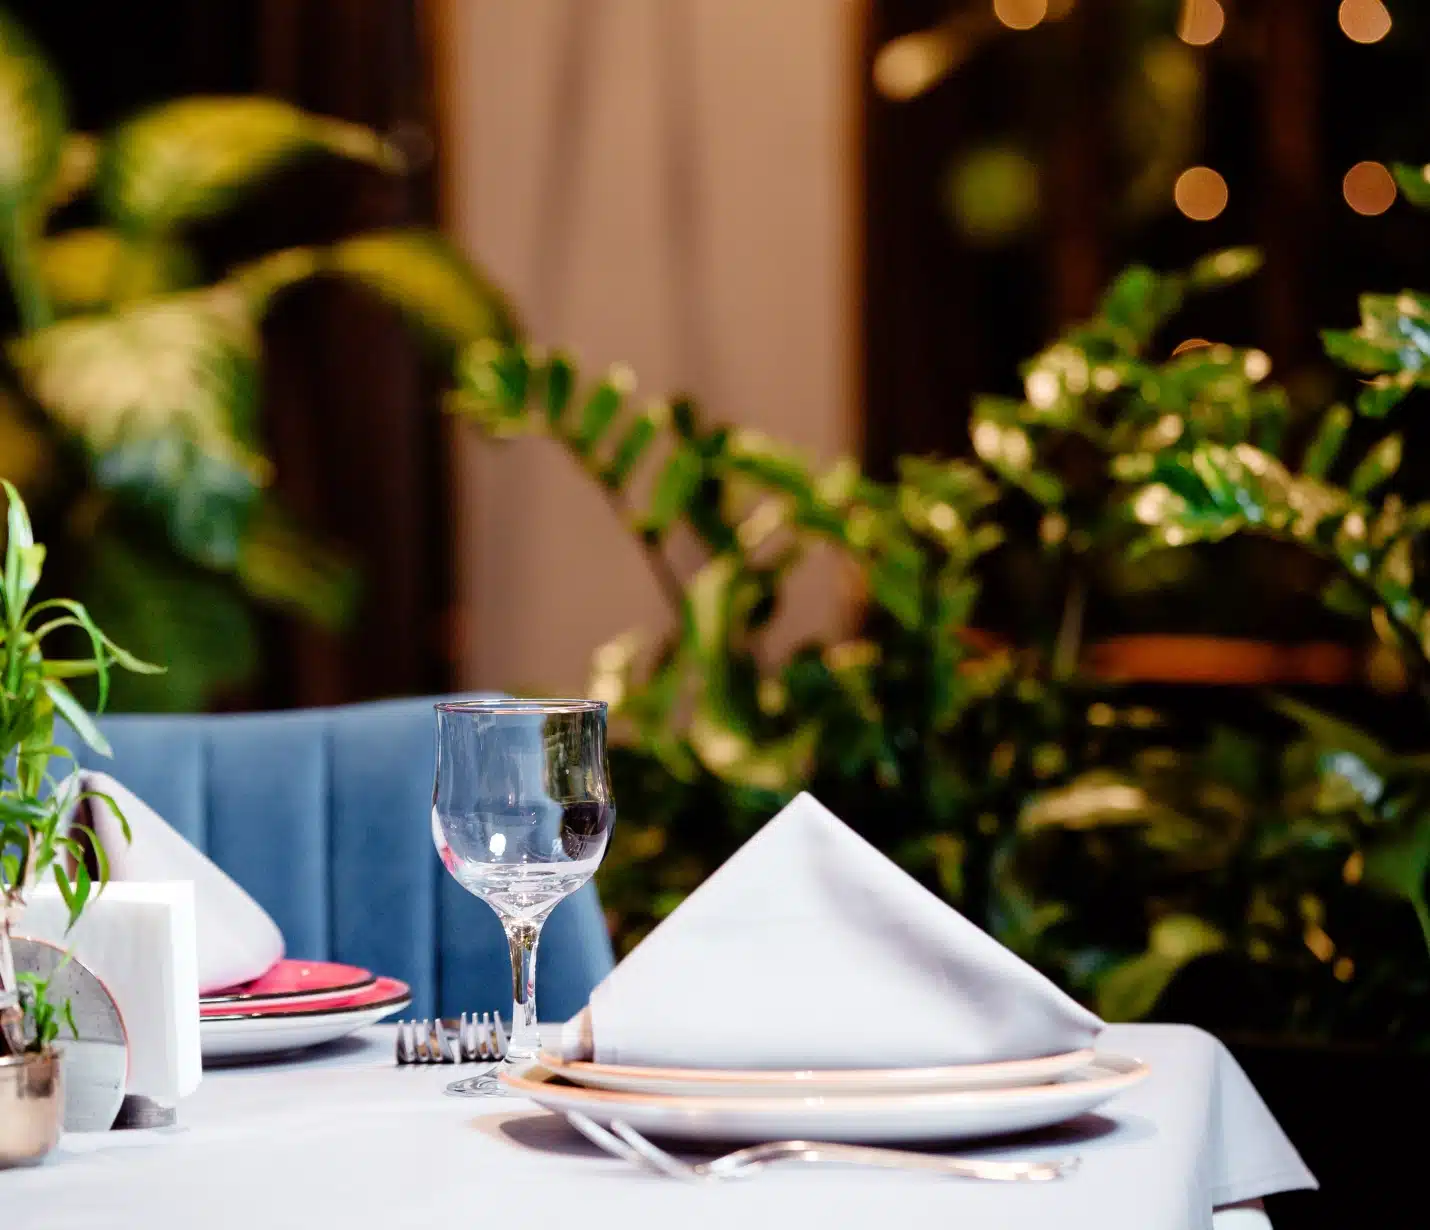 table de terrasse avec différents équipements de restaurant comme ustensiles, assiettes et nappes.